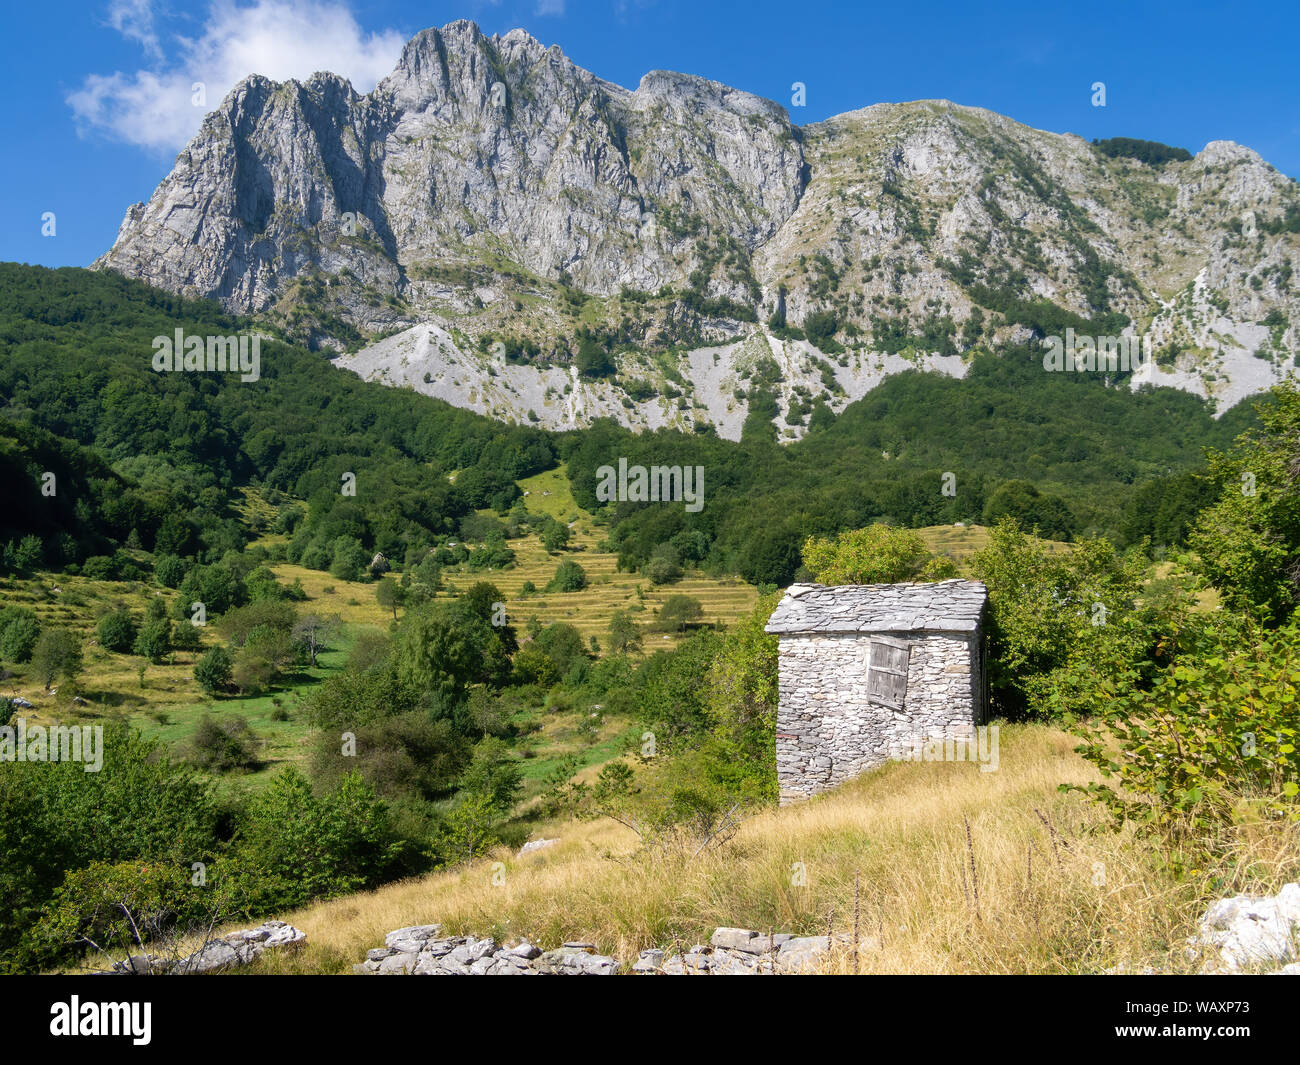 Vista di Campocatino nelle Alpi Apuane, aka Vagli Sotto. Bellissima gemma dimenticata in Garfagnana, Italia. Fuori dai sentieri battuti. Foto Stock